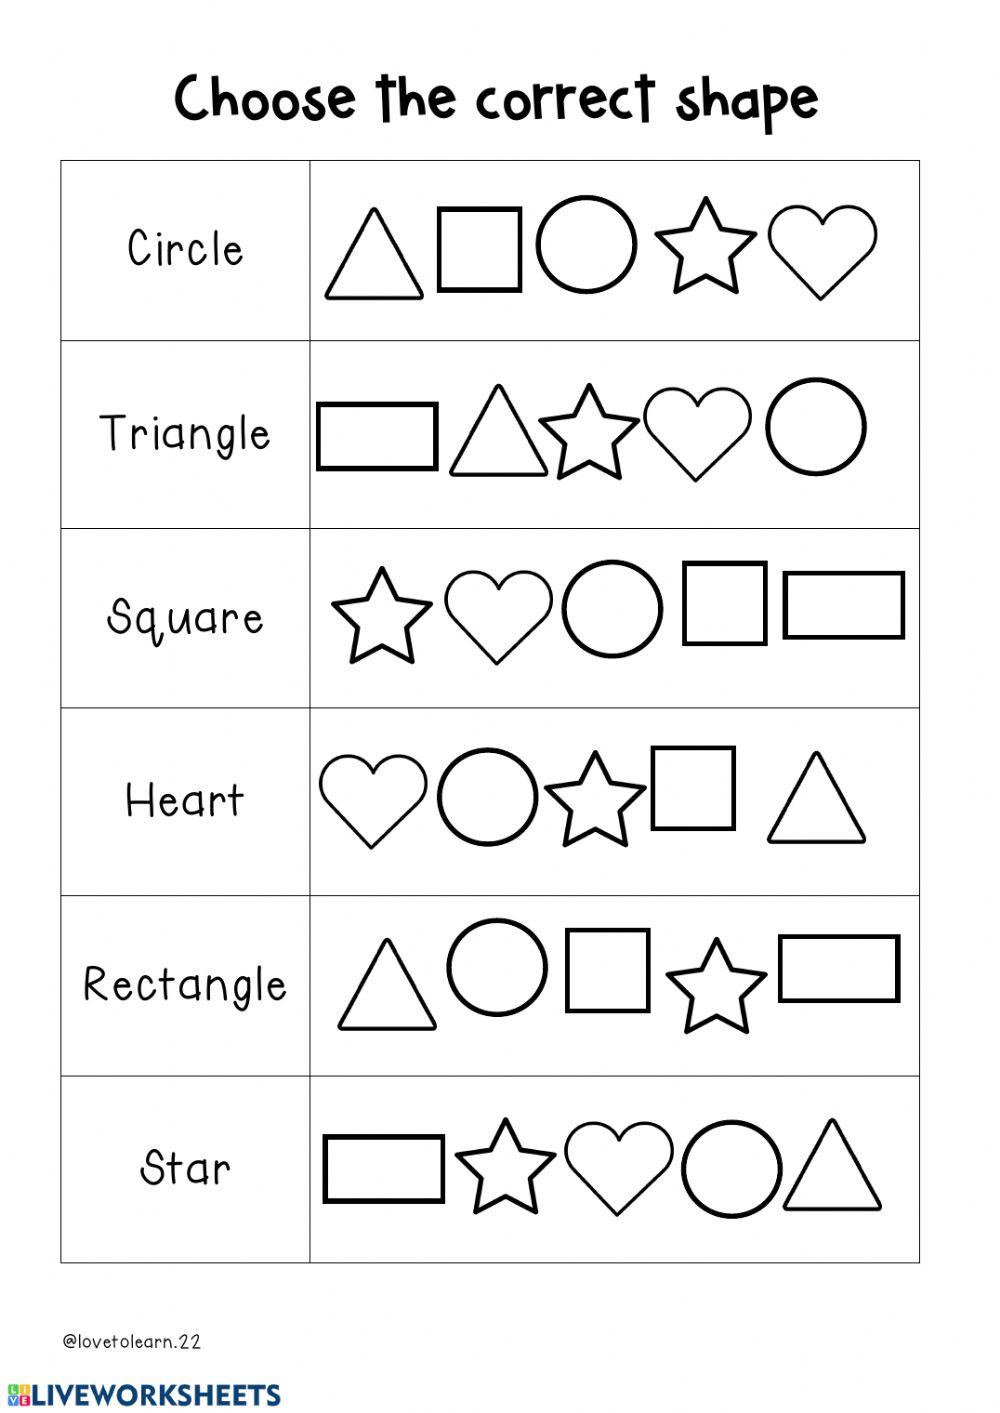 Geometric shapes